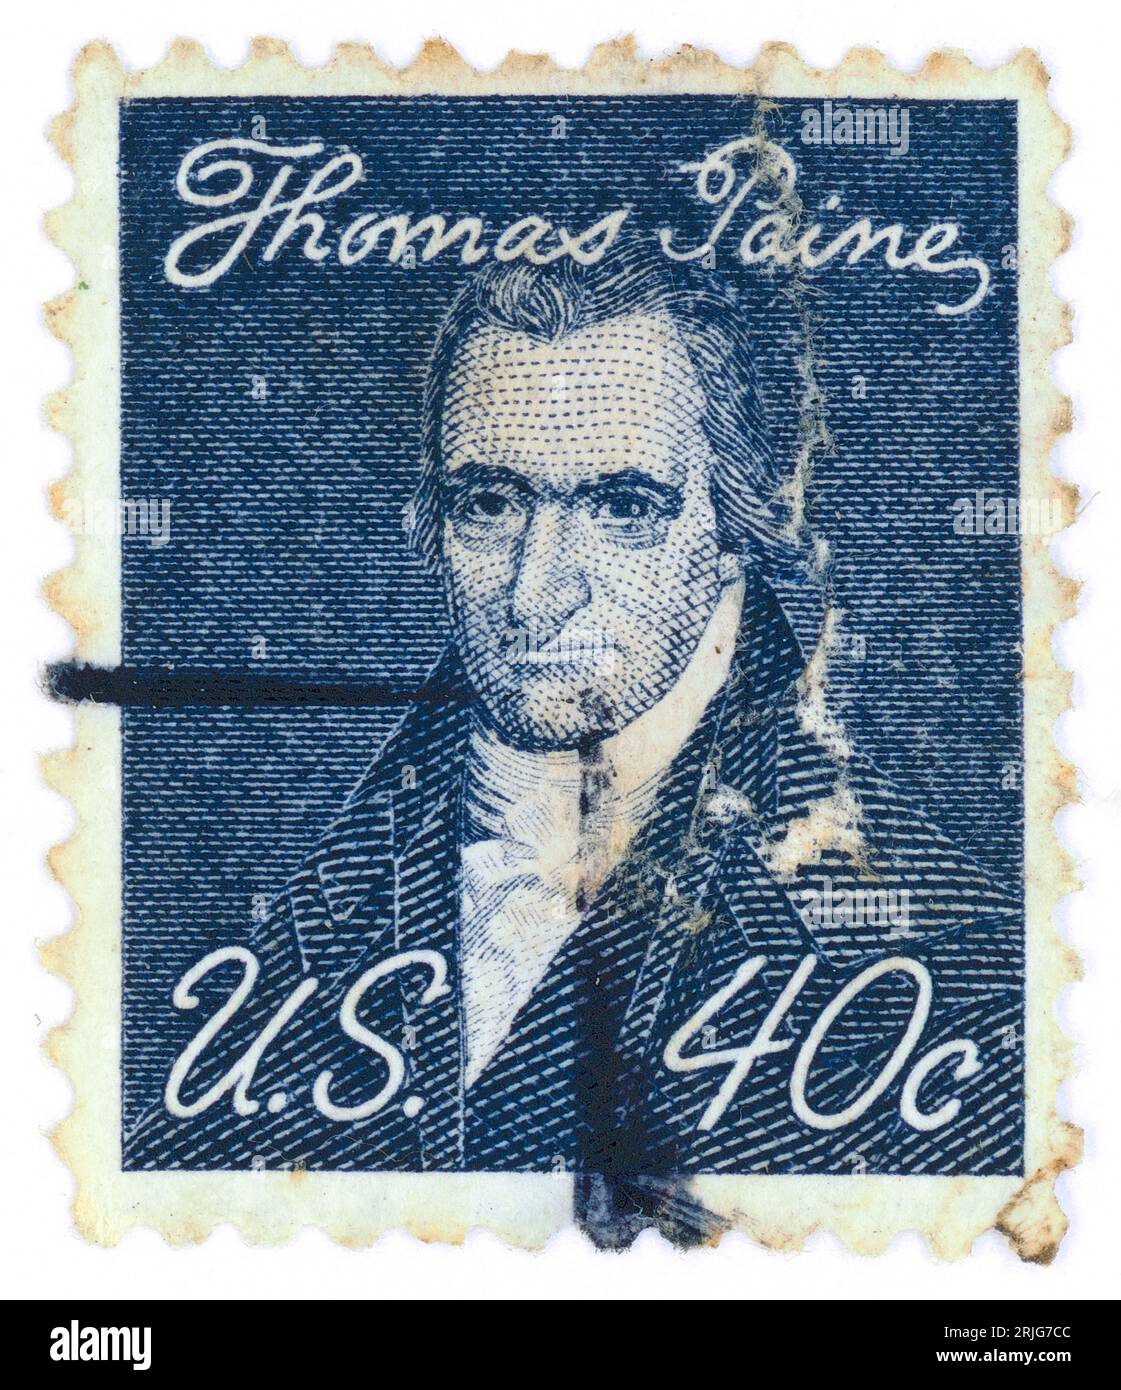 Thomas Paine (né Thomas pain ; 1737 – 1809). Timbre-poste émis aux États-Unis en 1968. Thomas Paine était un père fondateur américain d'origine anglaise, militant politique, philosophe, théoricien politique et révolutionnaire. Il est l'auteur de Common Sense (1776) et The American Crisis (1776-1783), deux des brochures les plus influentes au début de la Révolution américaine, et il a contribué à inspirer les Patriots en 1776 à déclarer leur indépendance de la Grande-Bretagne. Ses idées reflétaient les idéaux des droits de l'homme de l'ère des Lumières. Banque D'Images